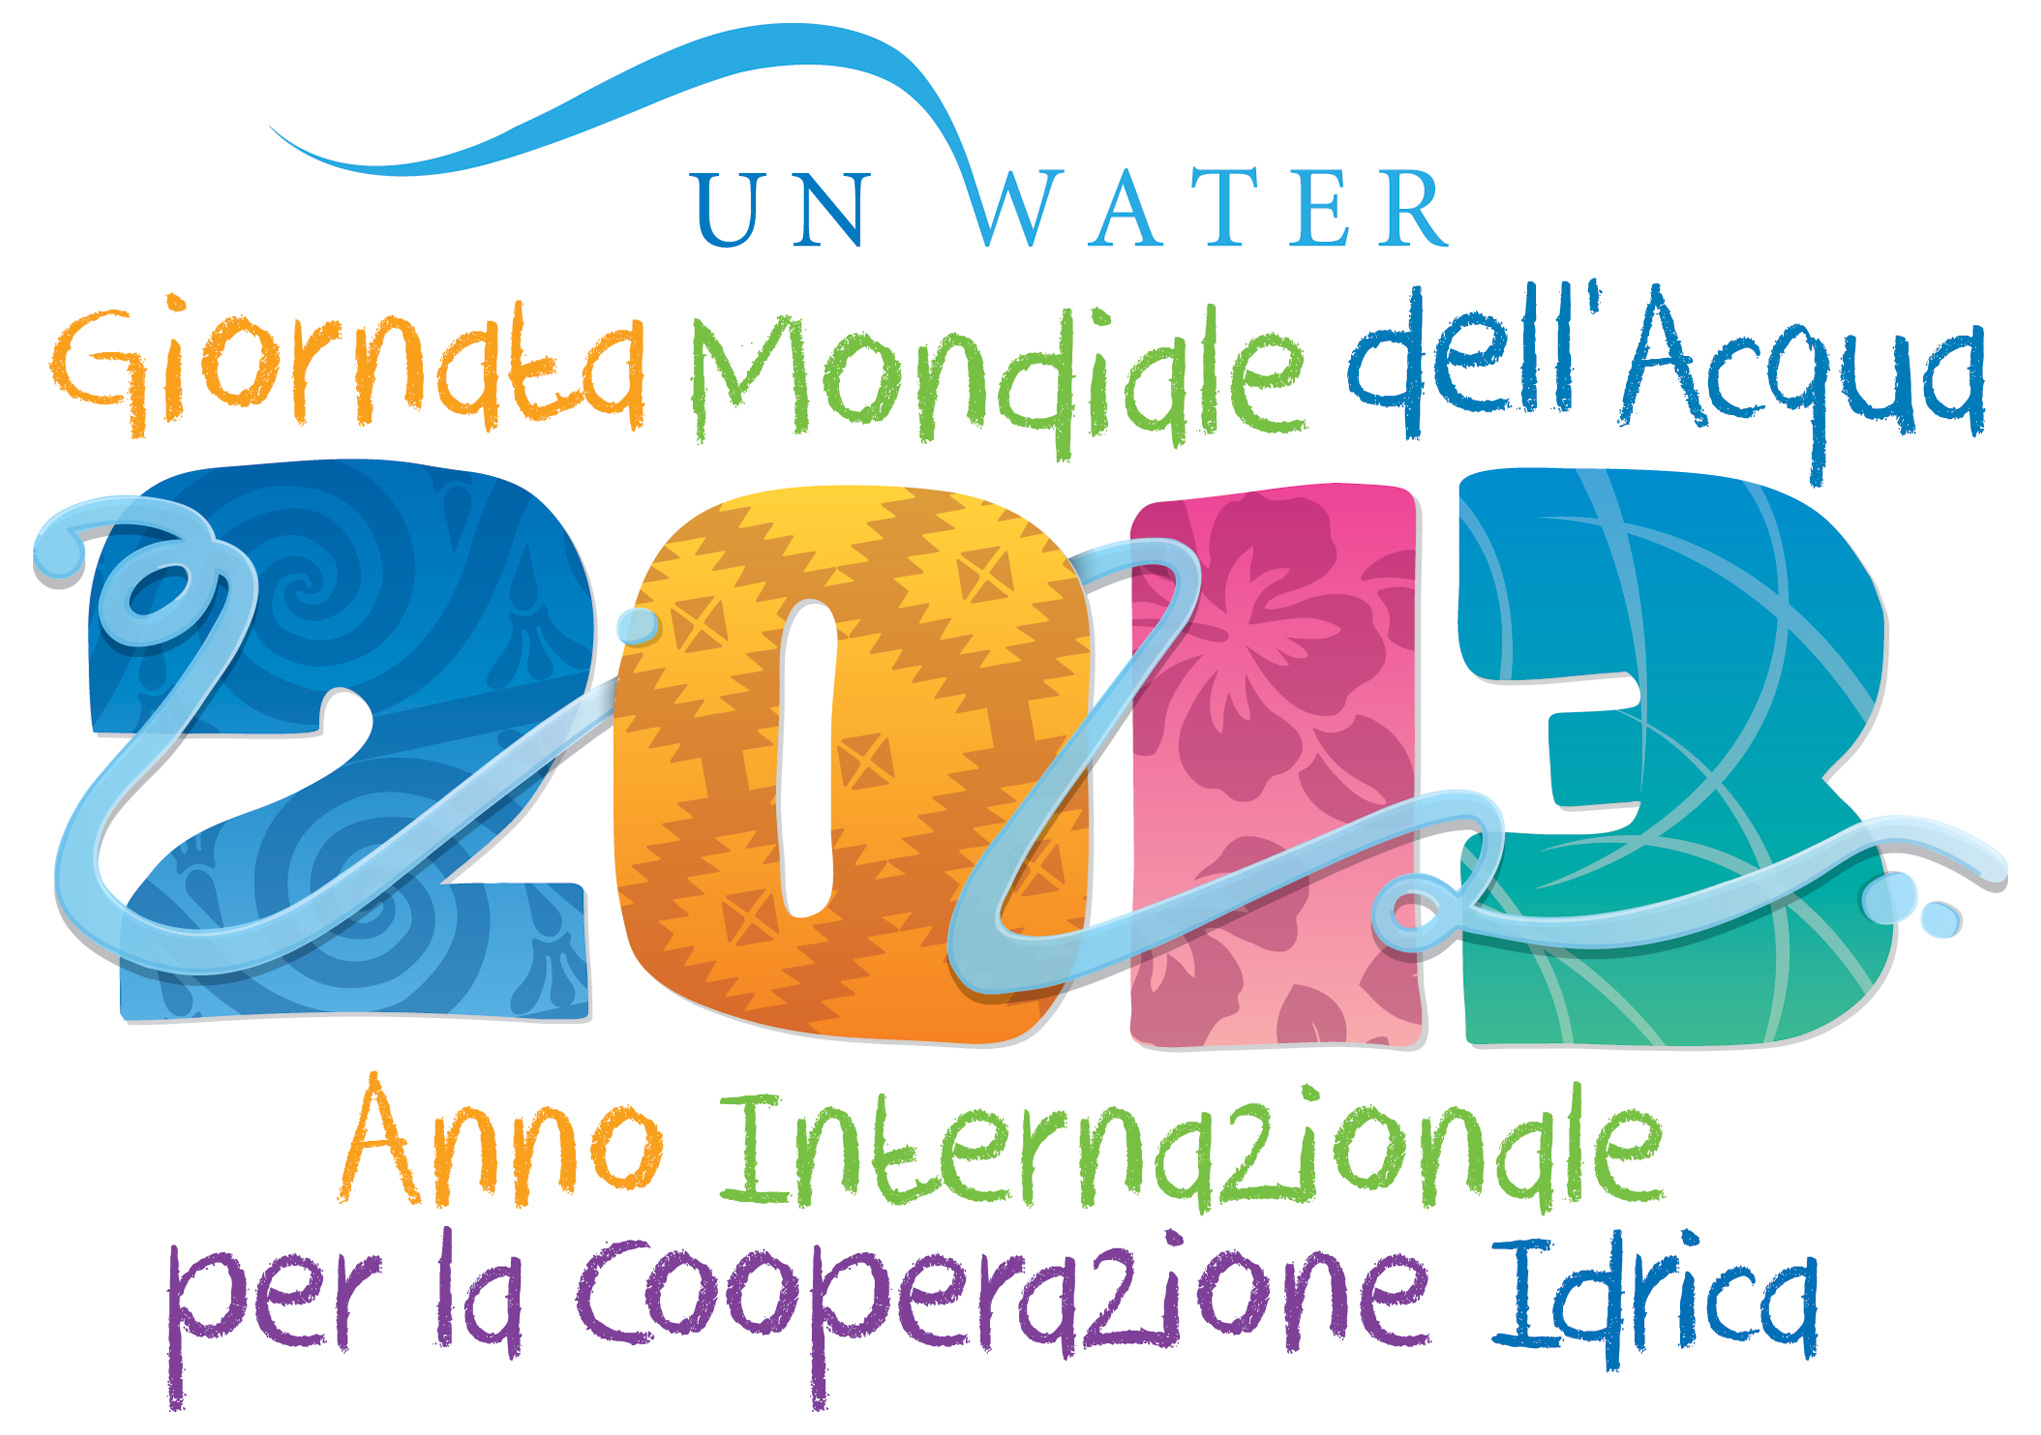 Giornata Mondiale dell'Acqua - 22 marzo 2013